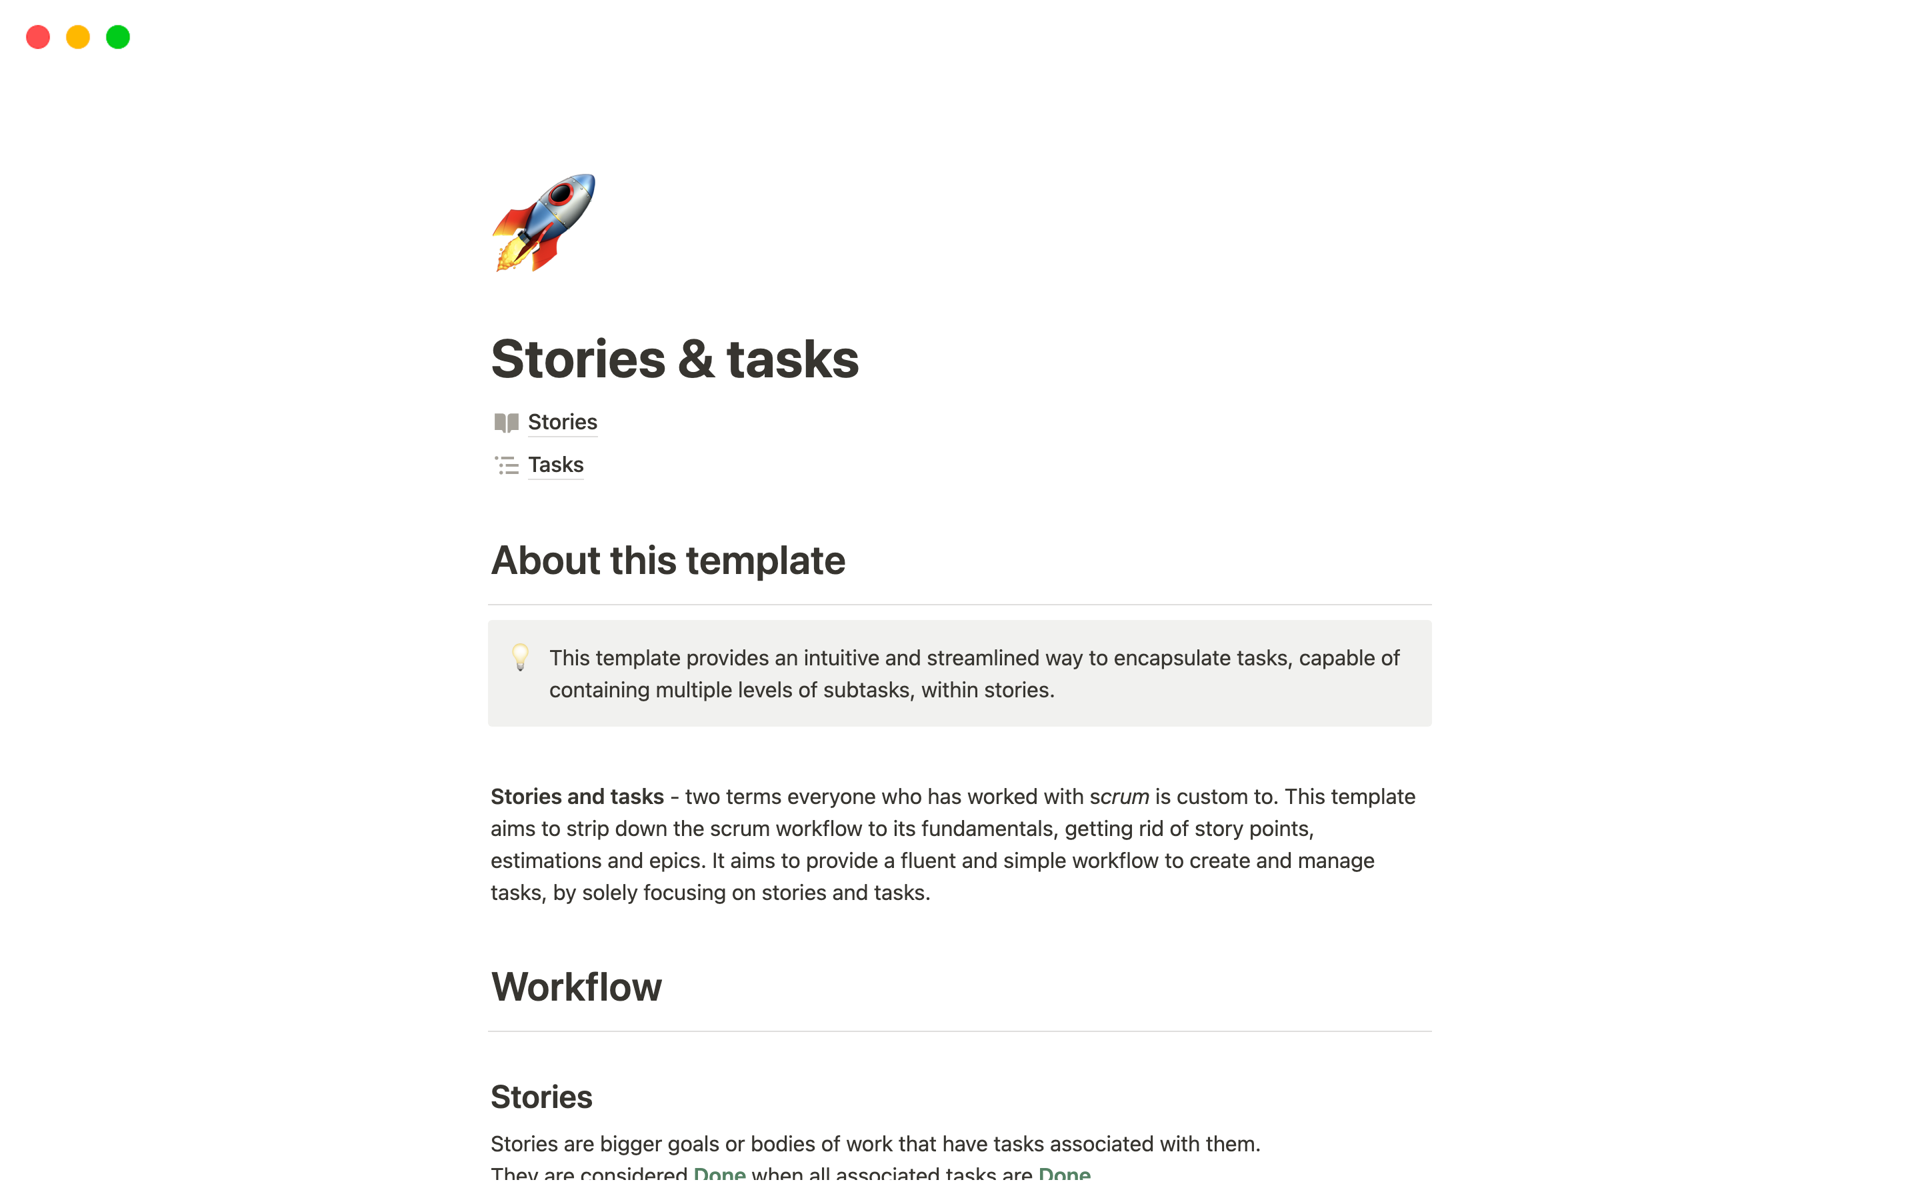 Vista previa de una plantilla para Stories & tasks